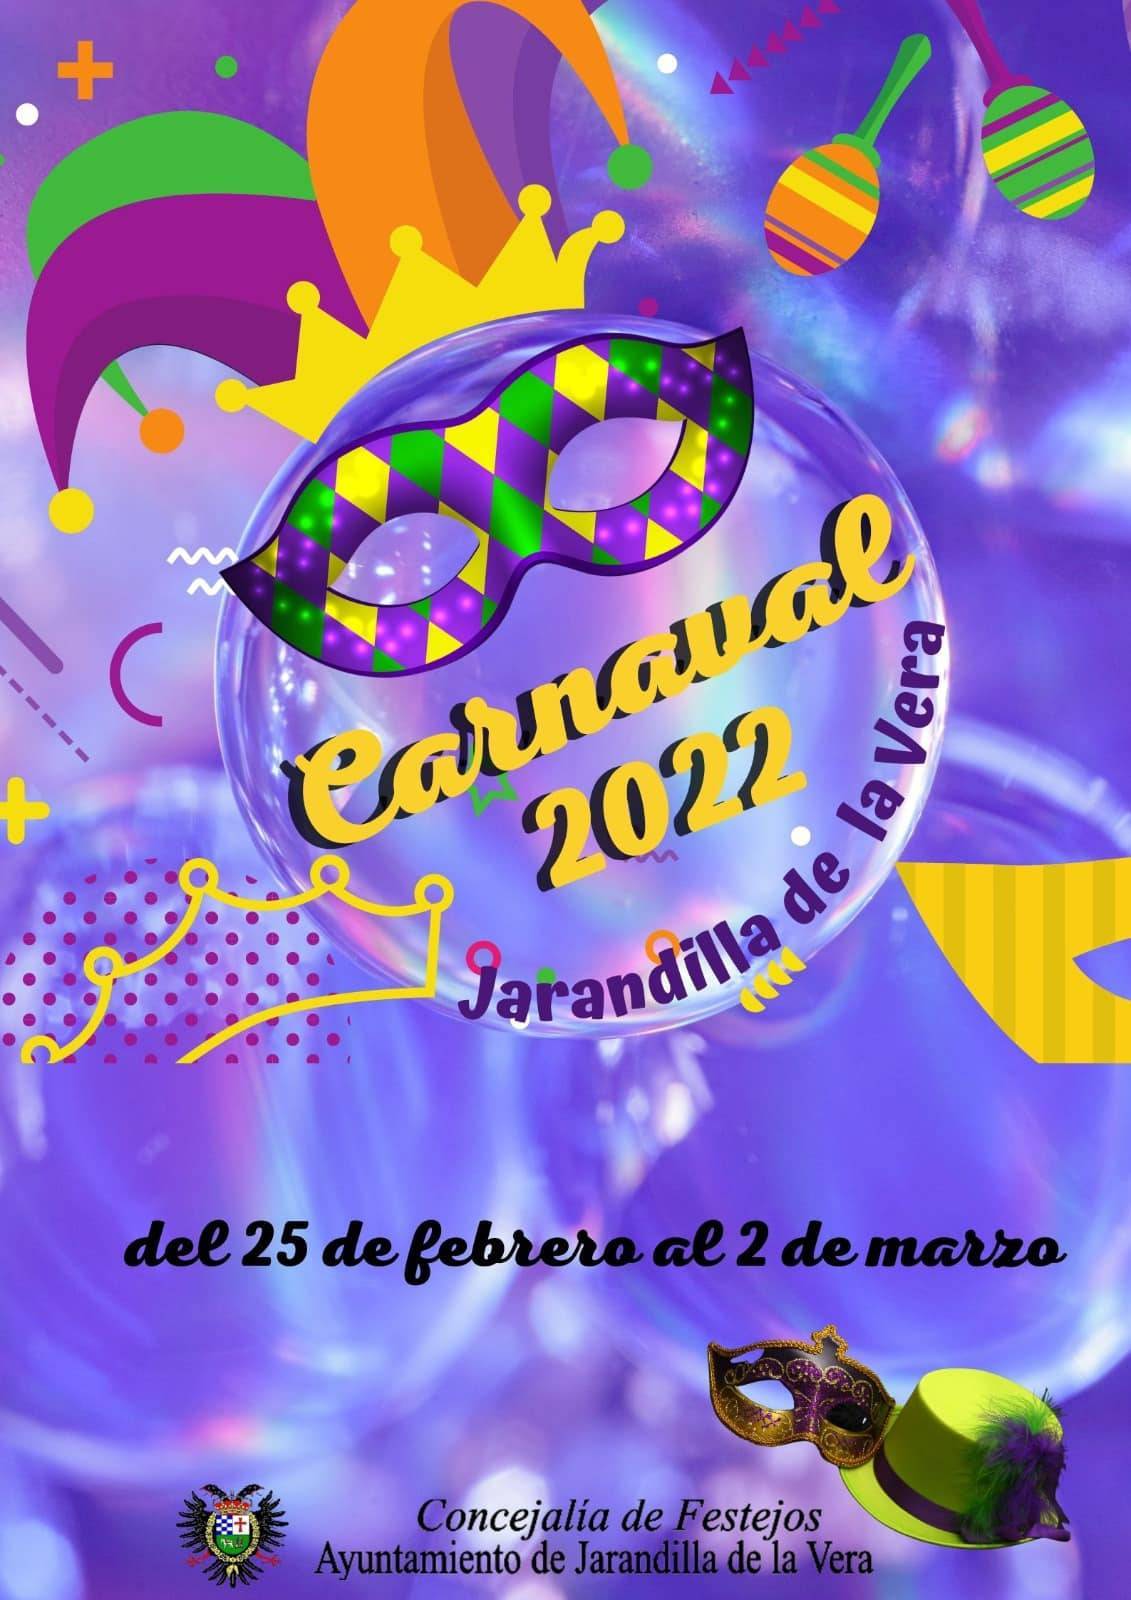 Carnaval (2022) - Jarandilla de la Vera (Cáceres) 1